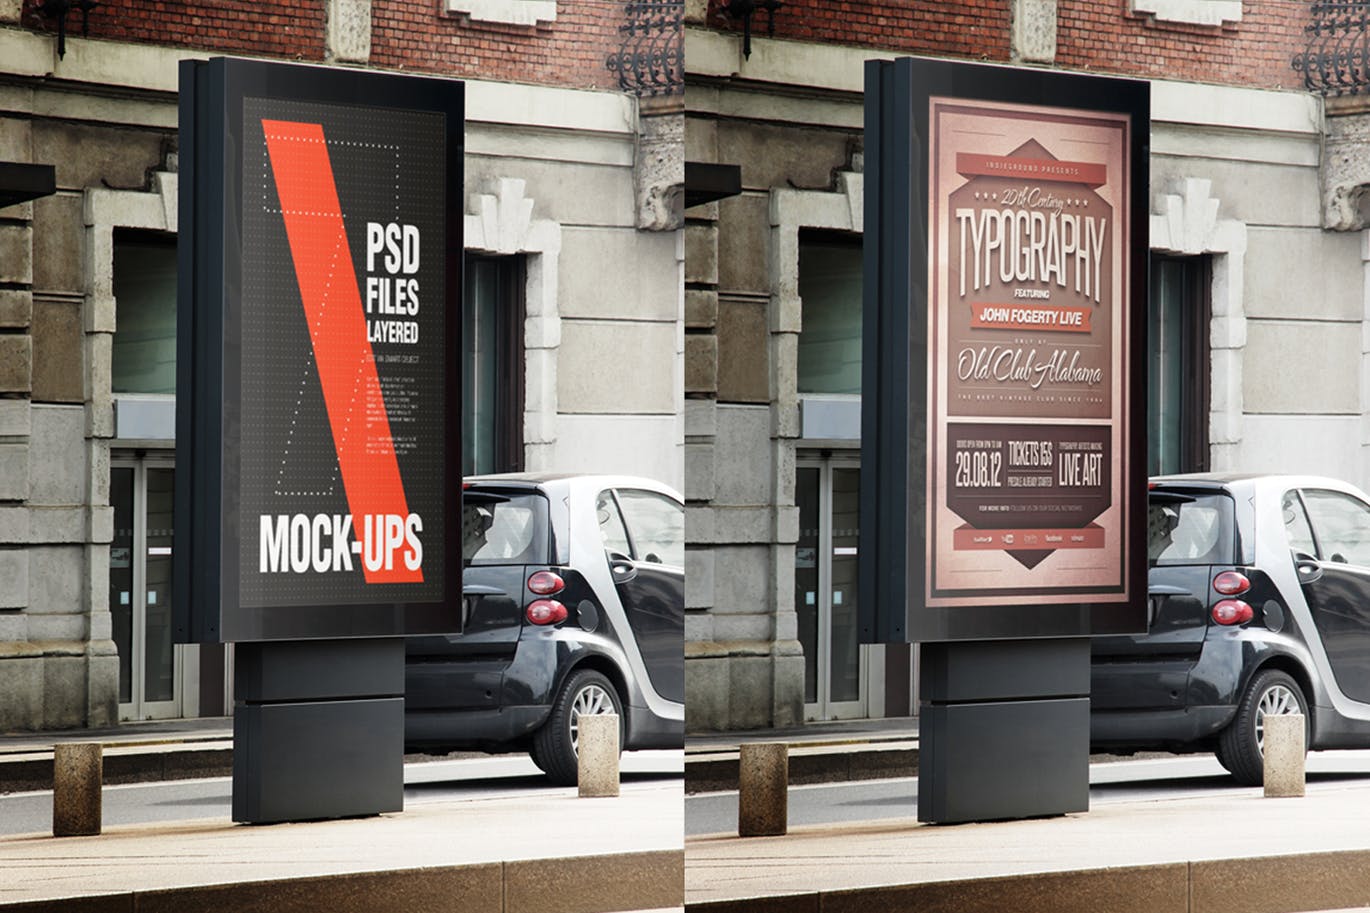 城市海报设计效果图预览样机第一素材精选 City Poster Flyer Mockup插图